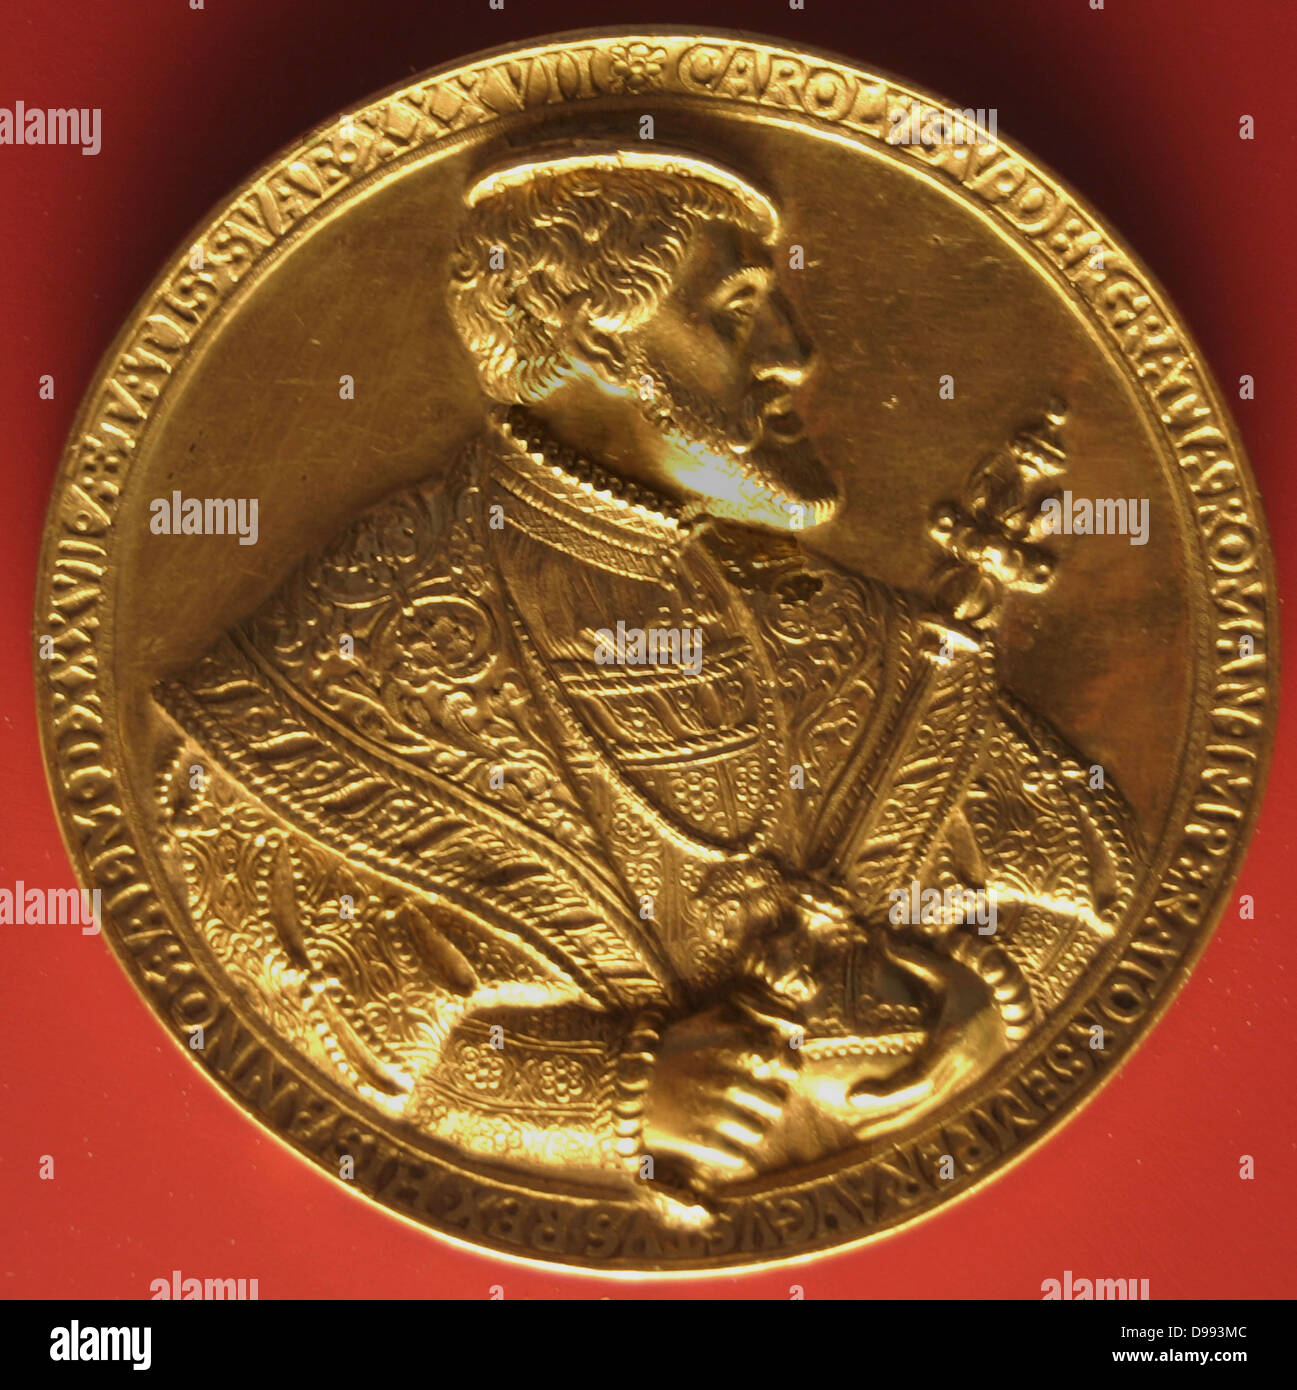 Carlo V rappresentato su una moneta in oro. (Carlos I, Carlos V o "Carlos I de España), 1500 - 1558)dominatore del Sacro Romano Impero dal 1519 e, come Carlos I di Spagna, dell'Impero spagnolo dal 1516 fino alla sua abdicazione nel 1556. Foto Stock